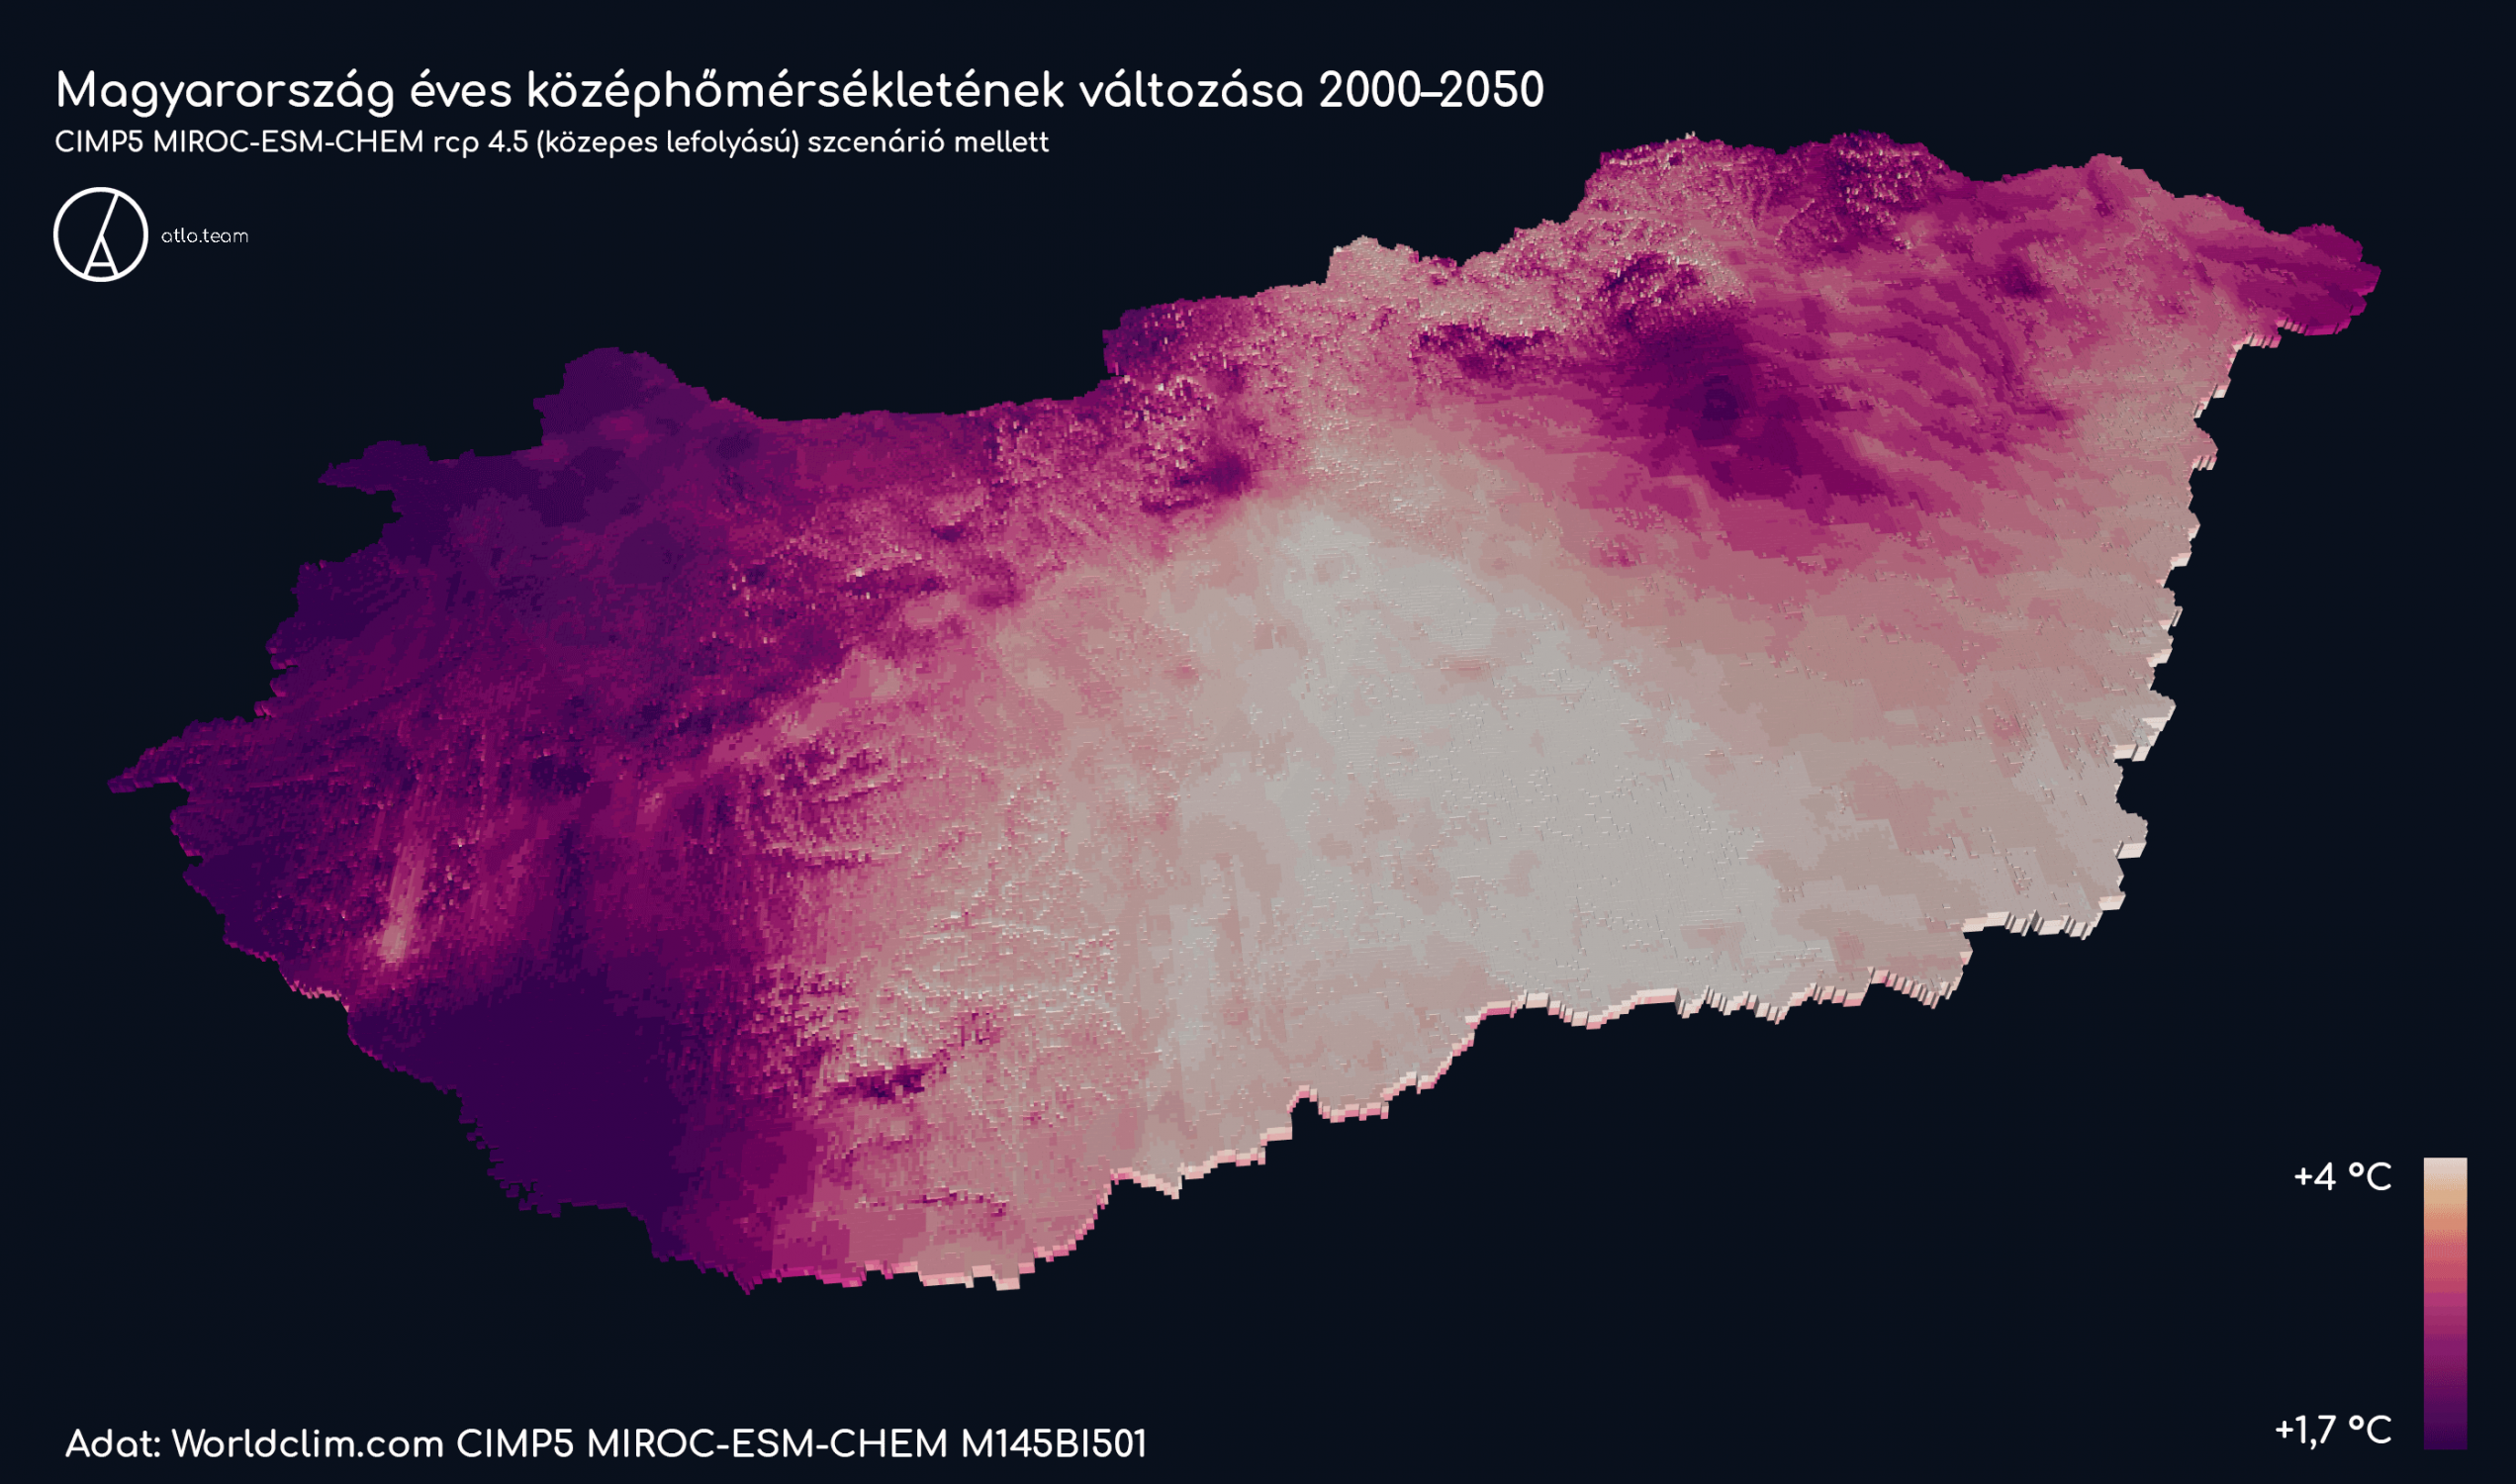 Magyarország középhőmérsékletének változása 2050-re / Qgis, Unfolded / terv